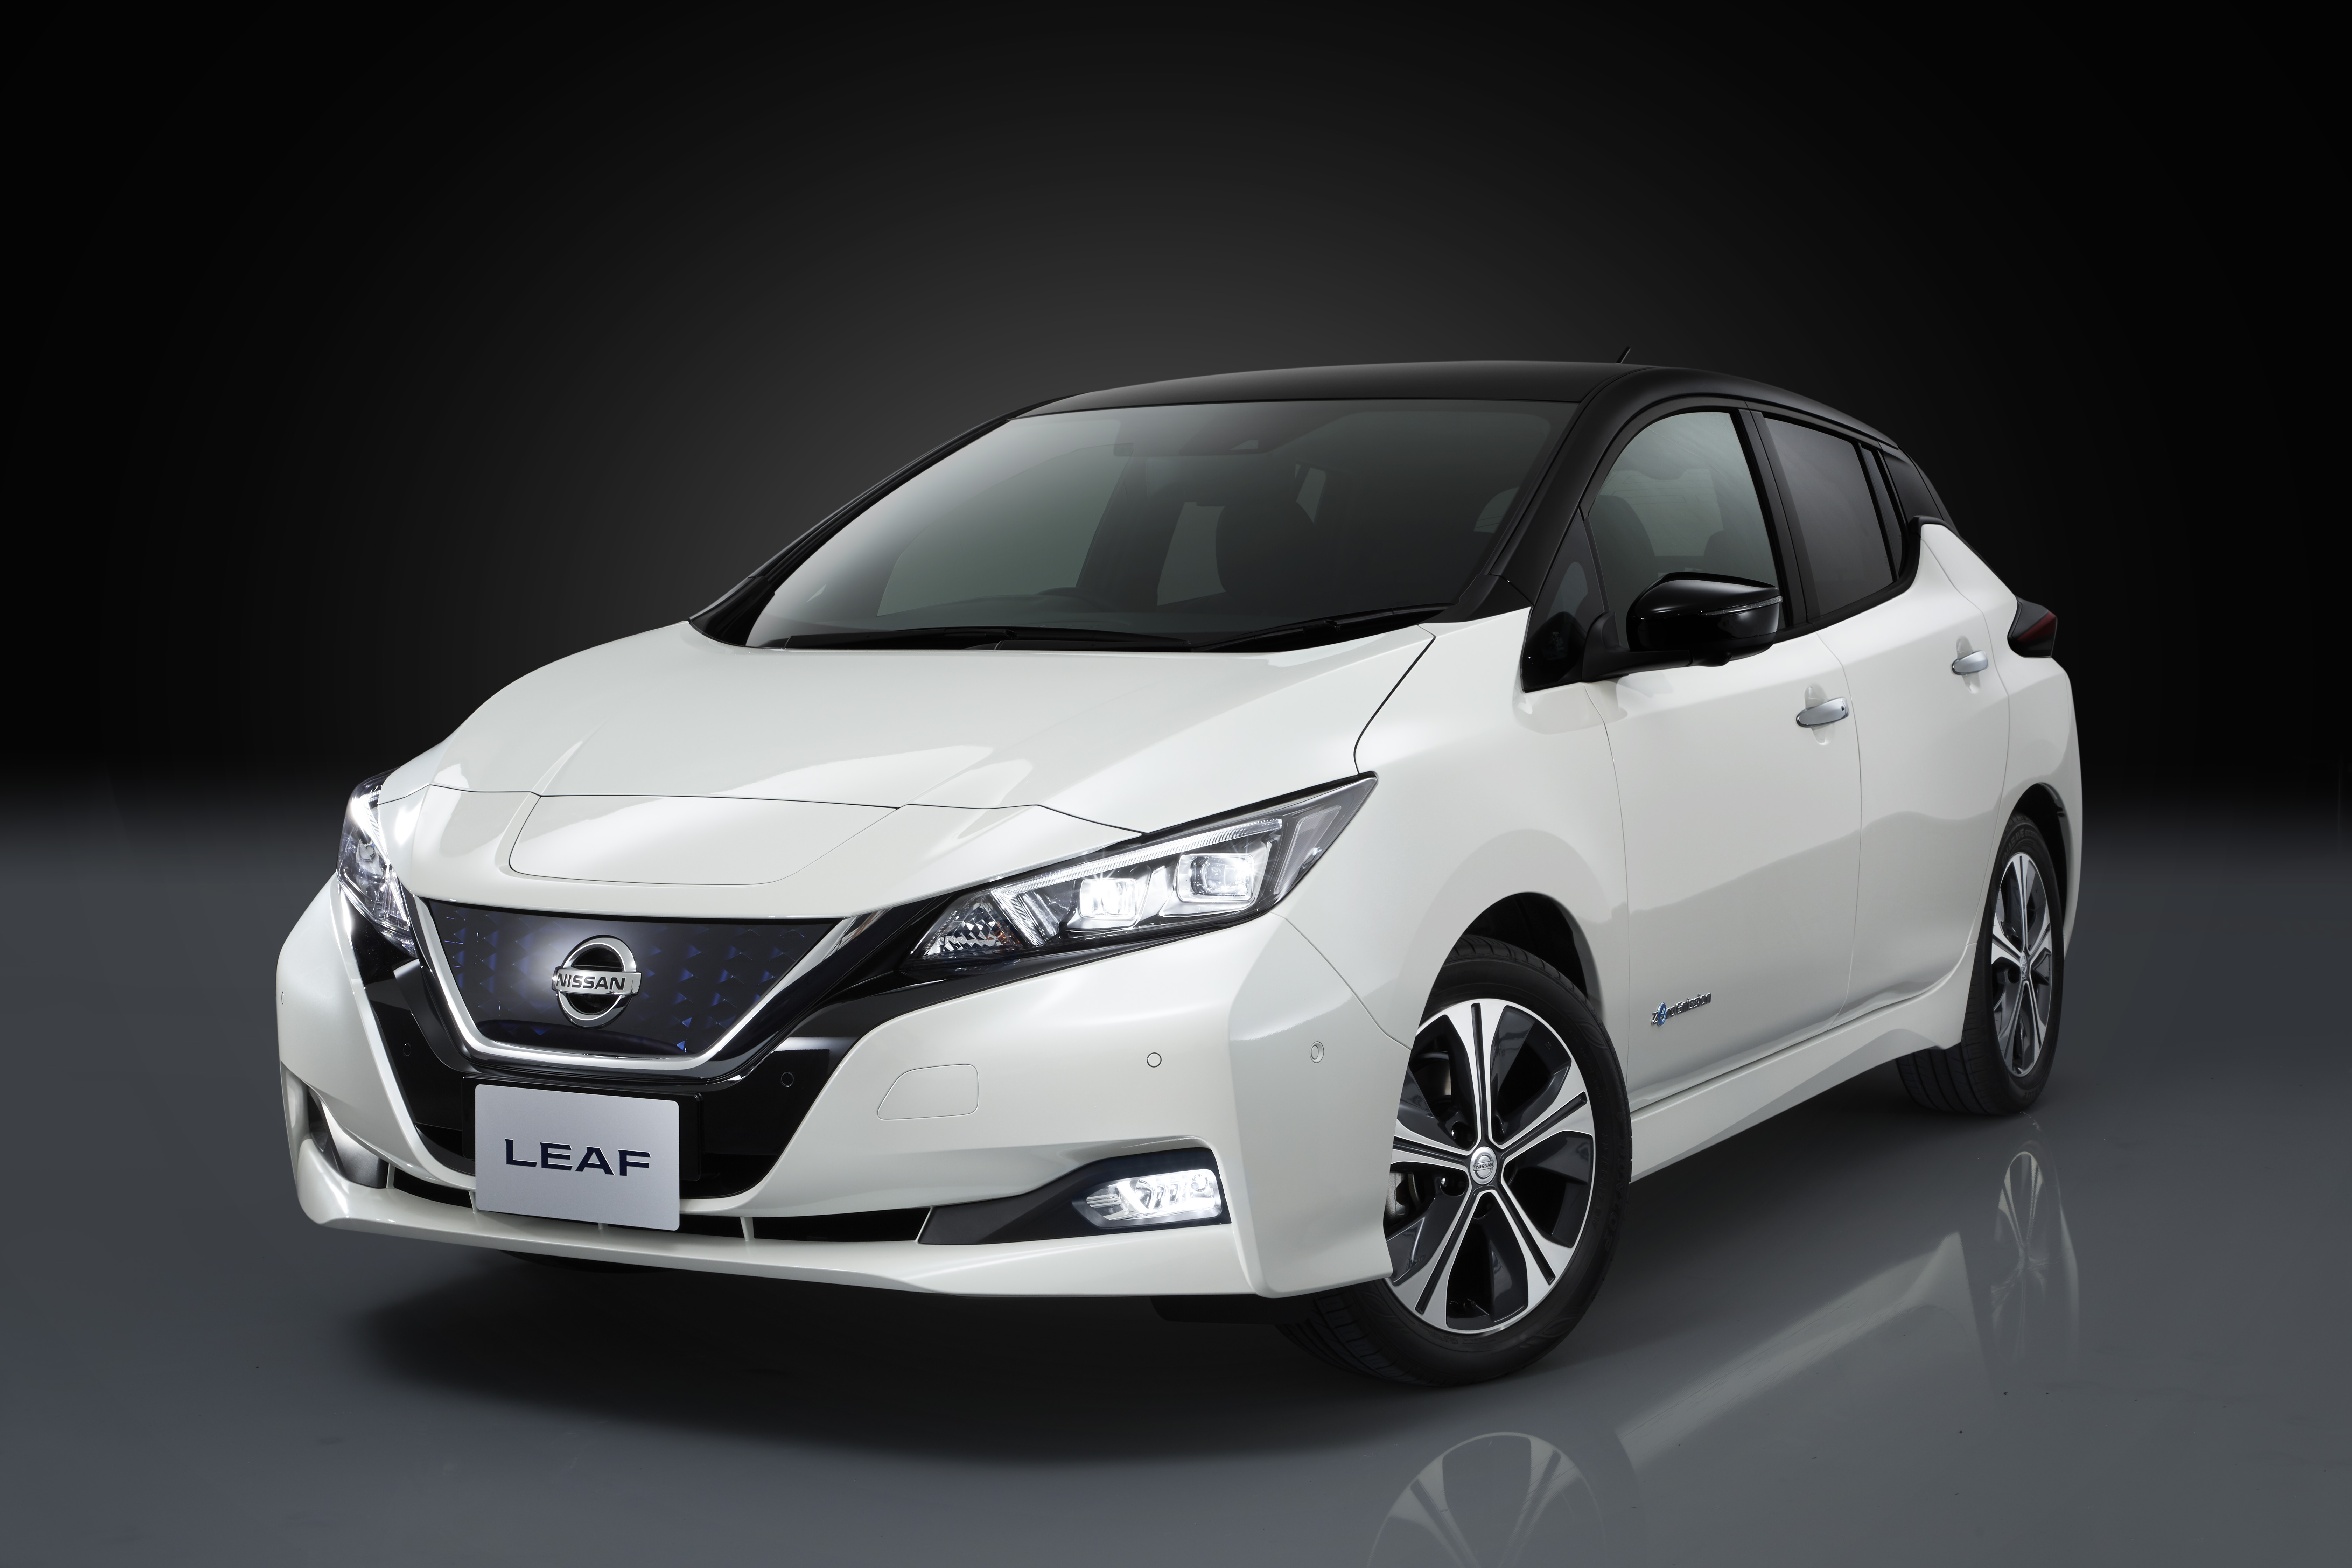  Nissan LEAF si conferma l’auto elettrica più venduta al mondo